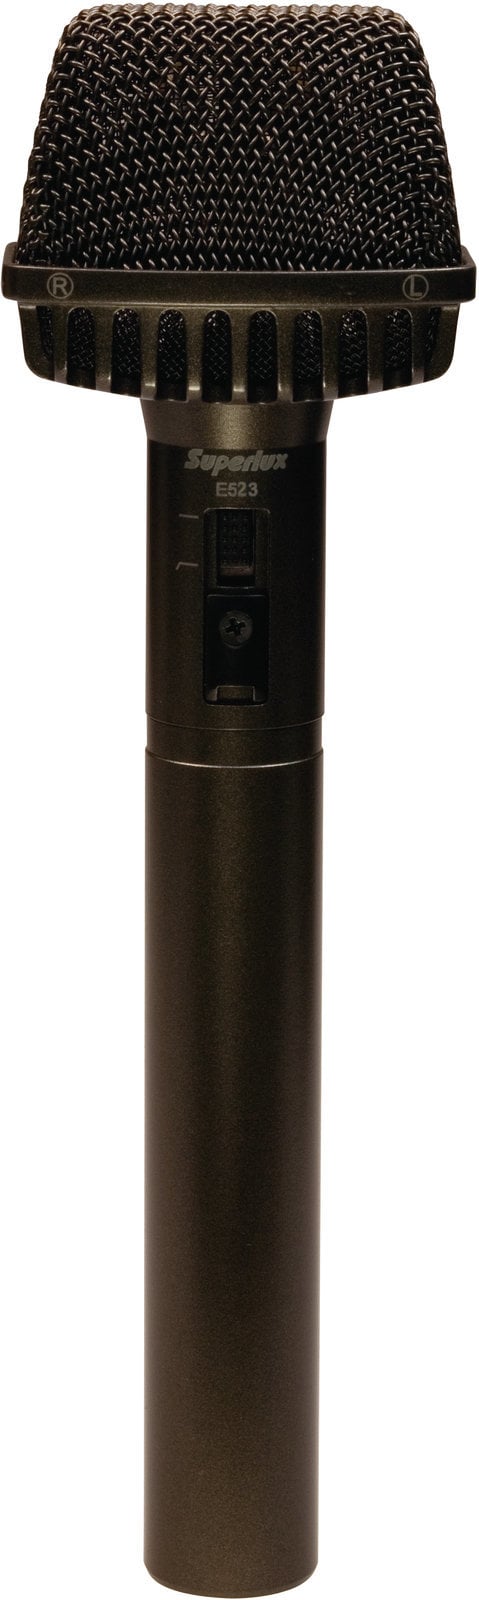 Microphone Stéréo Superlux E523D